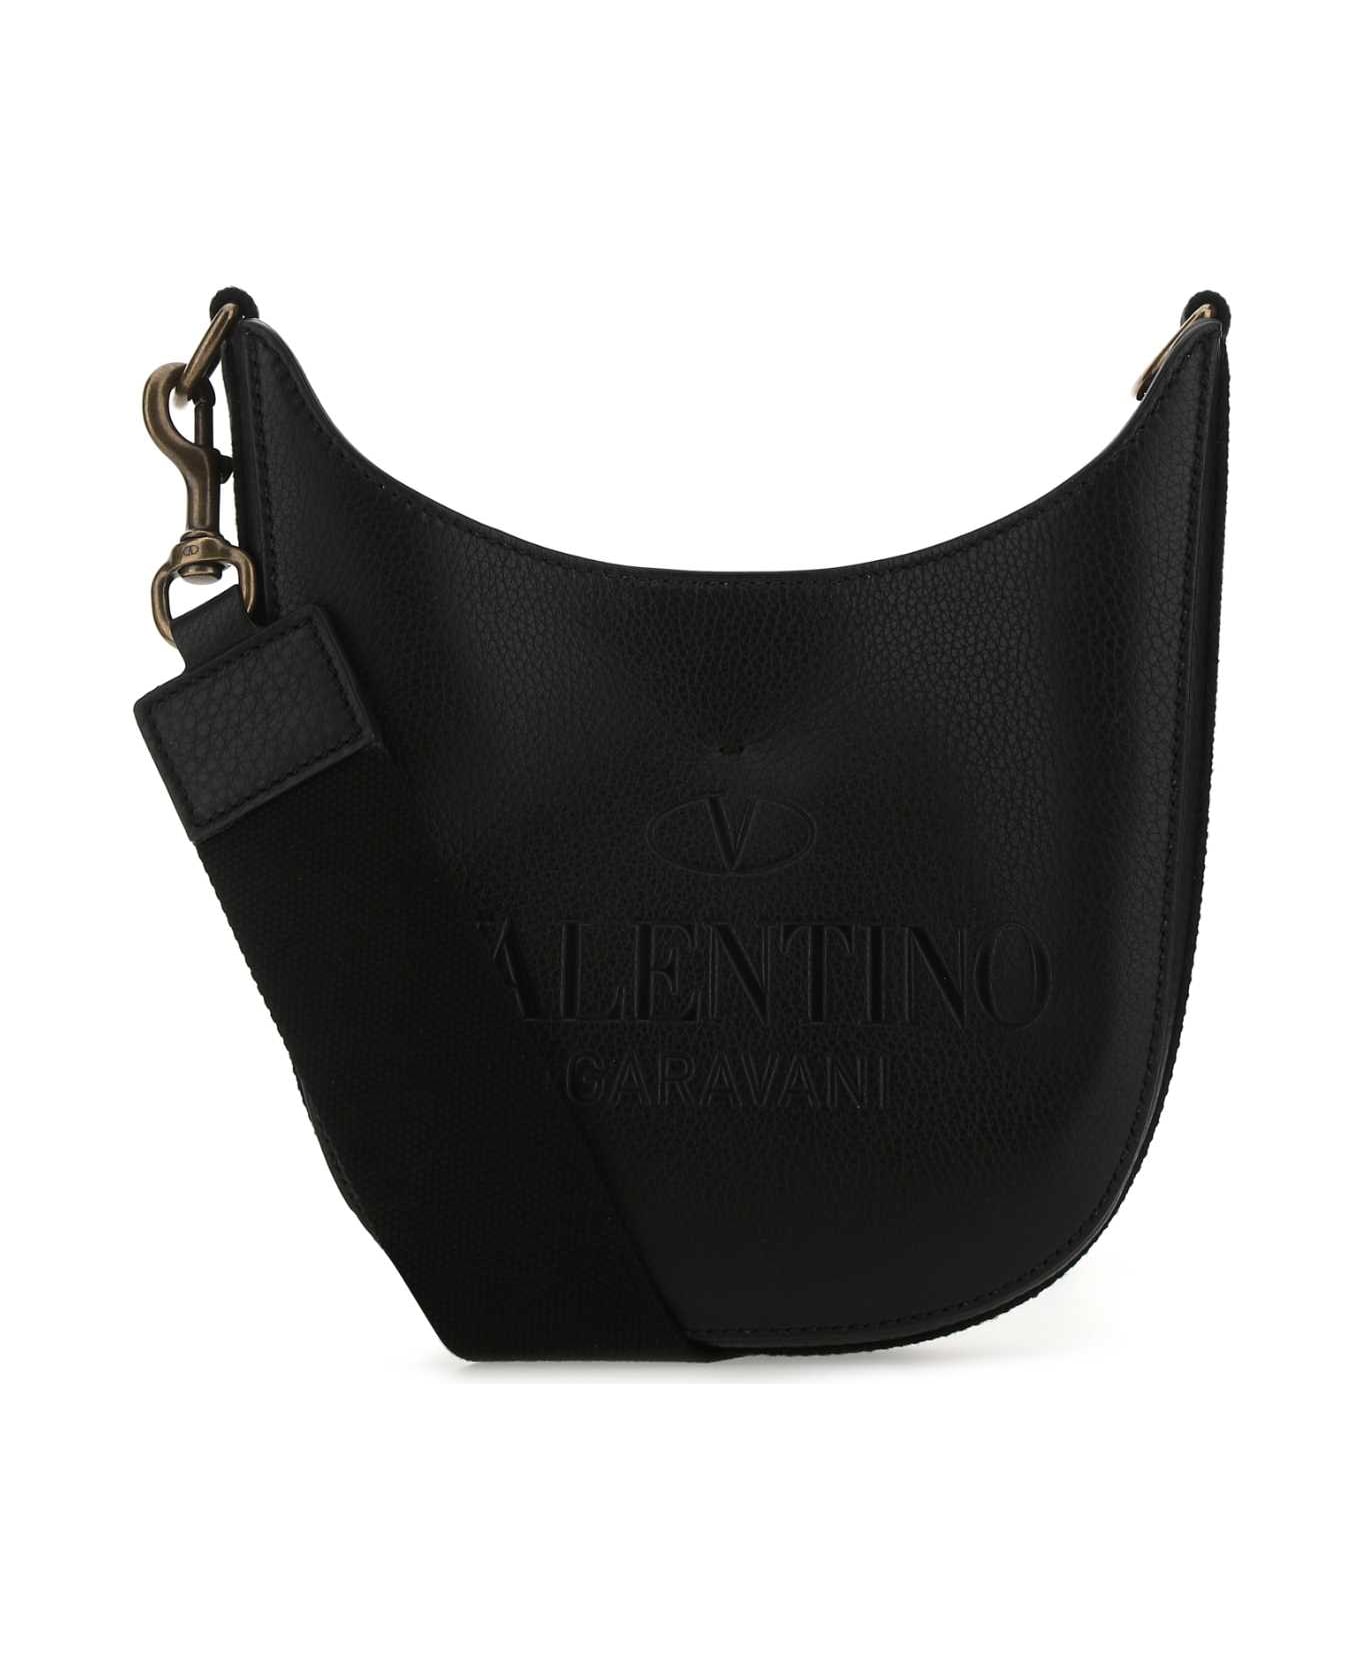 Valentino Garavani Black Leather Identity Crossbody Bag - 0NO